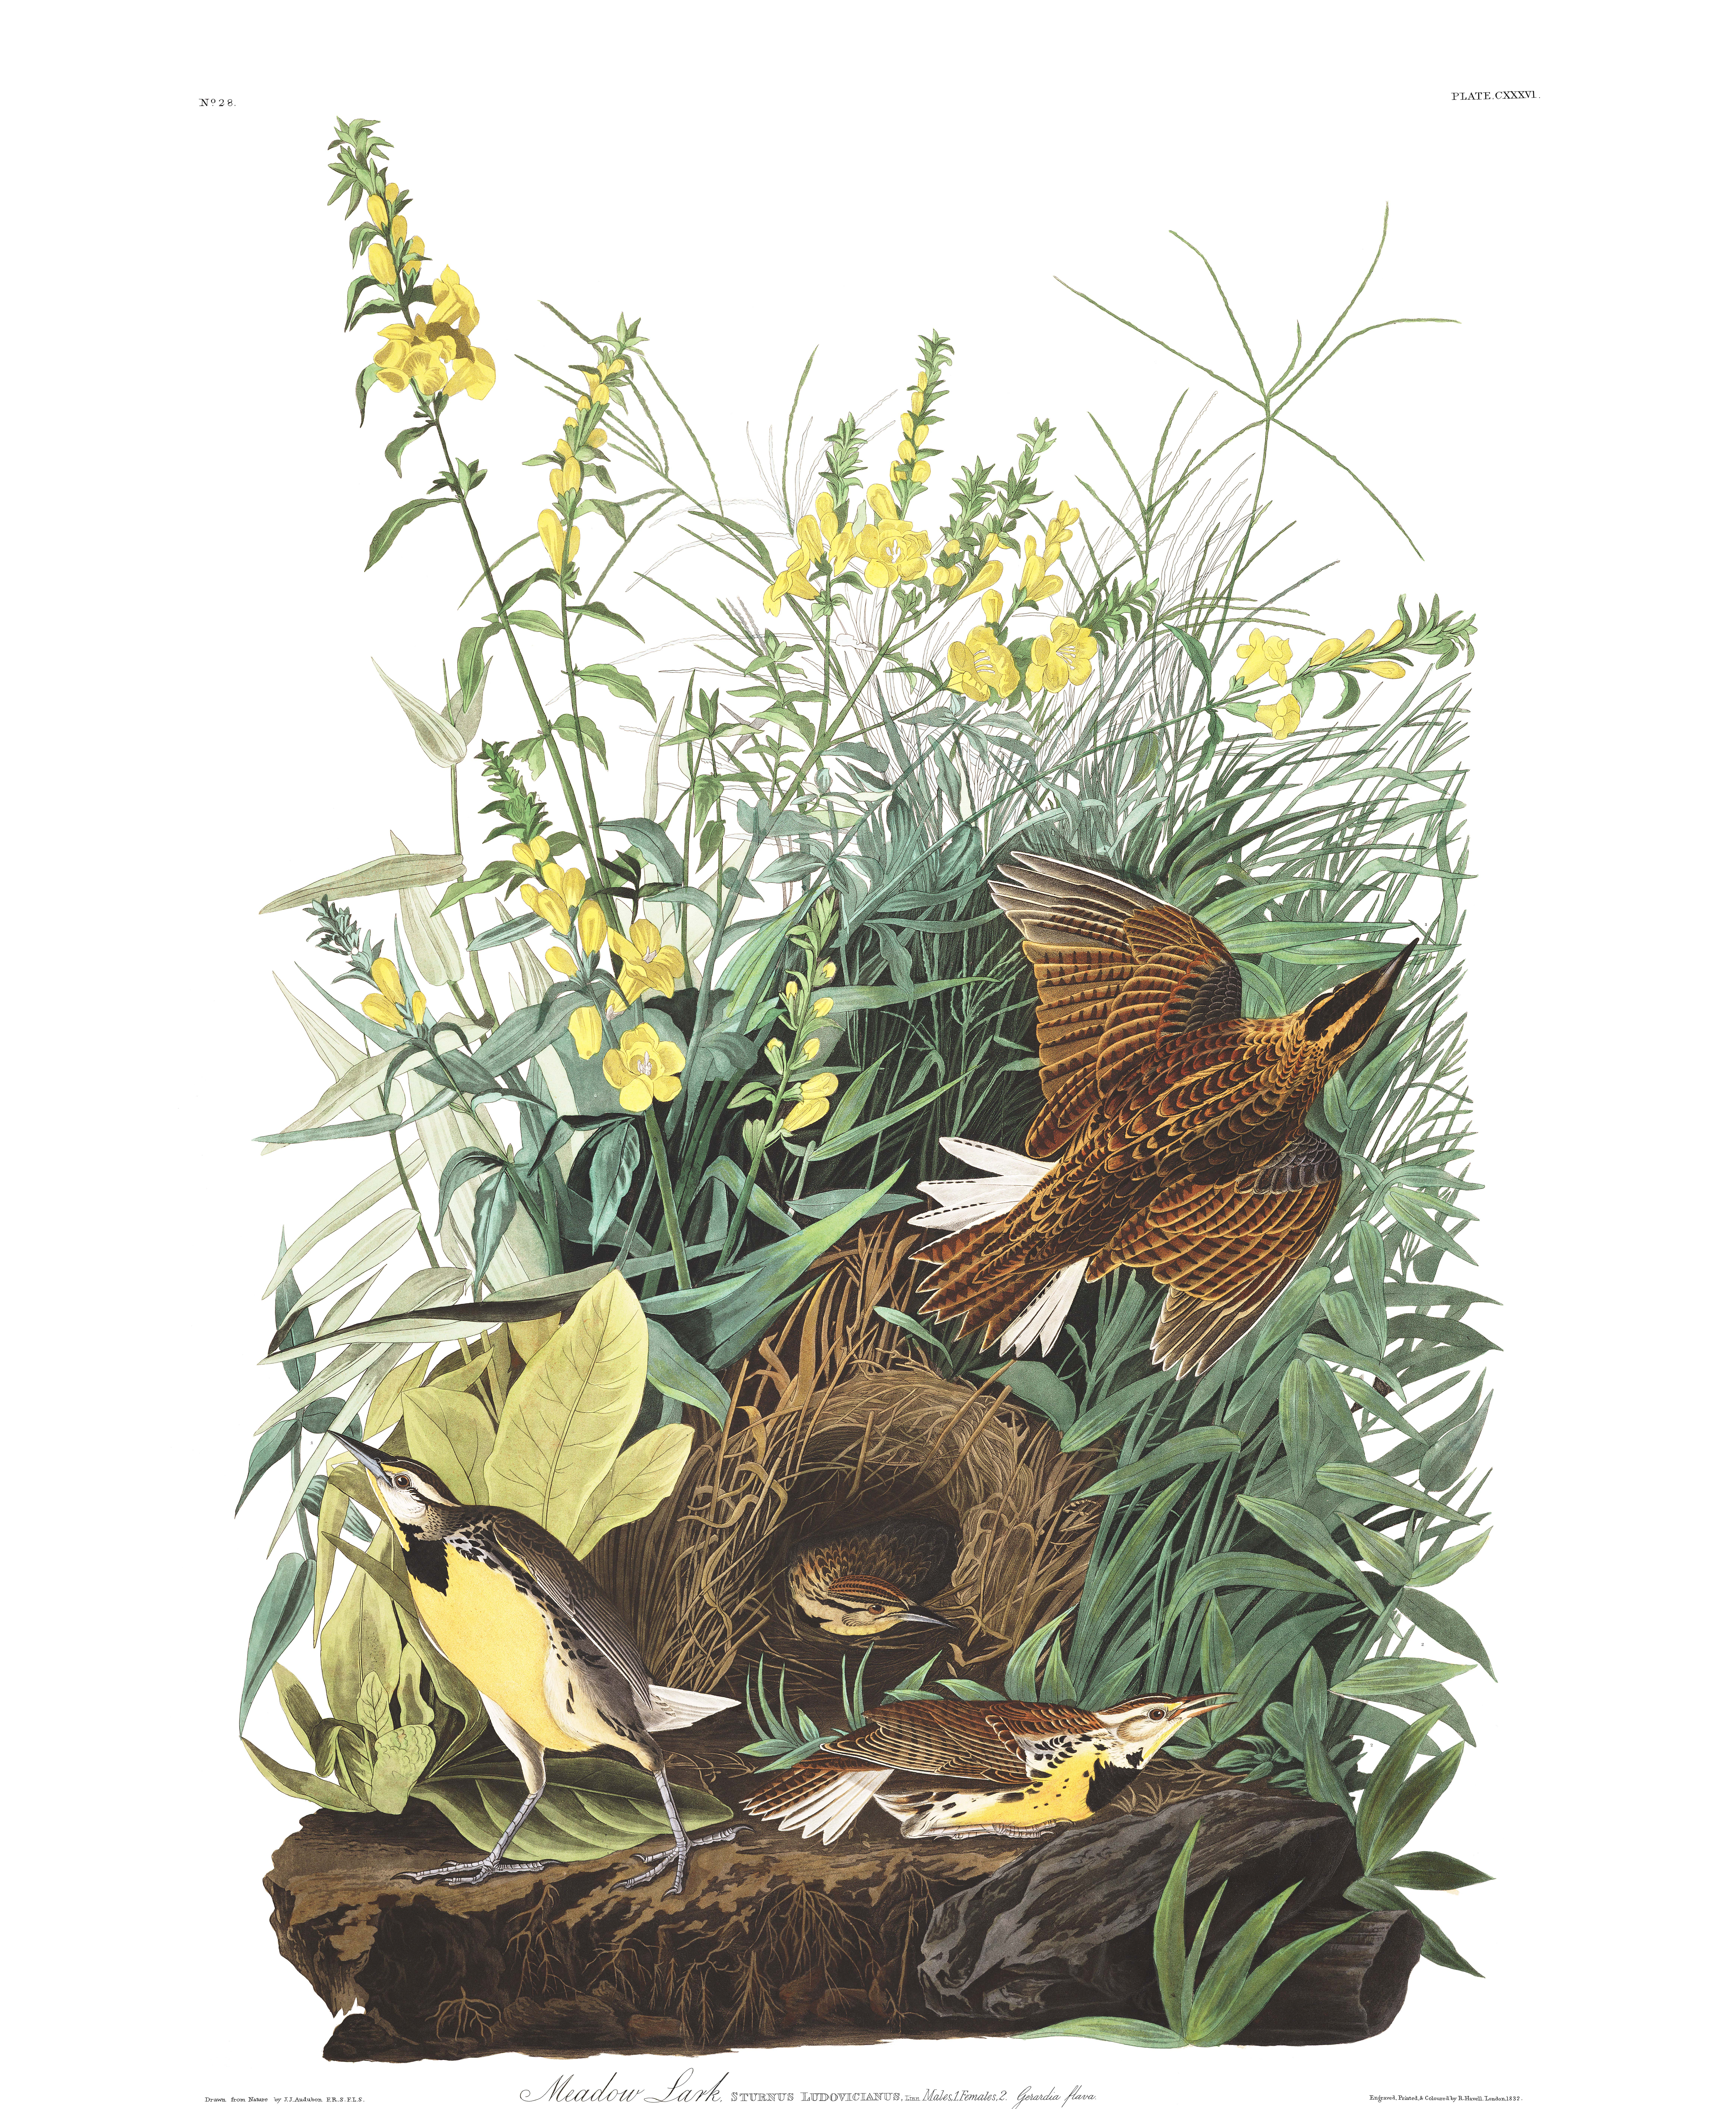 Jean Audubon's Meadow Lark